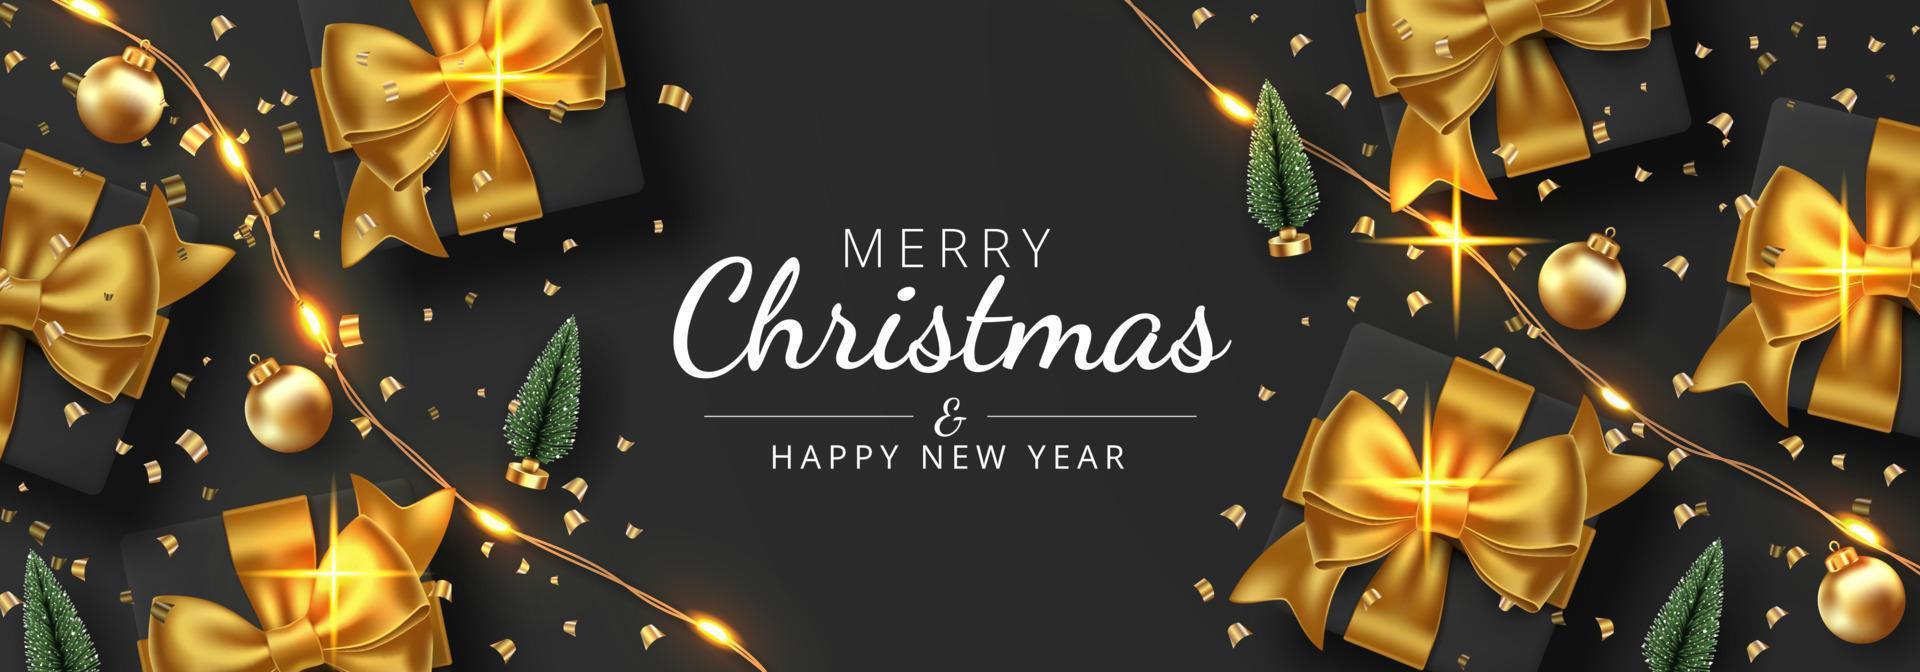 fondo de feliz navidad con regalo, luz de cadena, árbol de navidad y bolas de navidad. ilustración vectorial vector